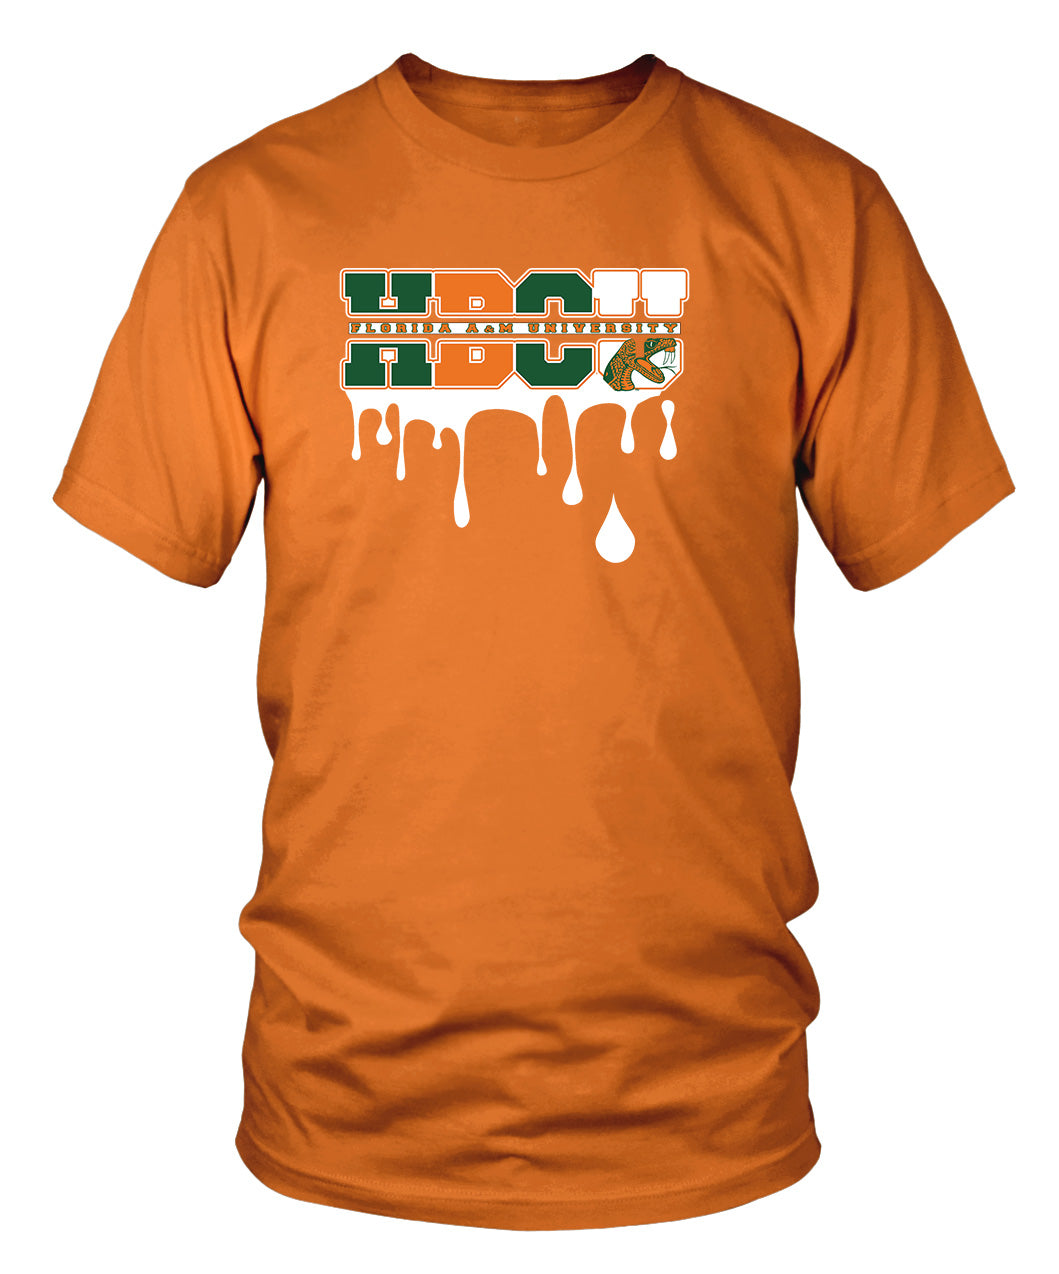 FAMU HBCU Drip T-shirts (Orange)